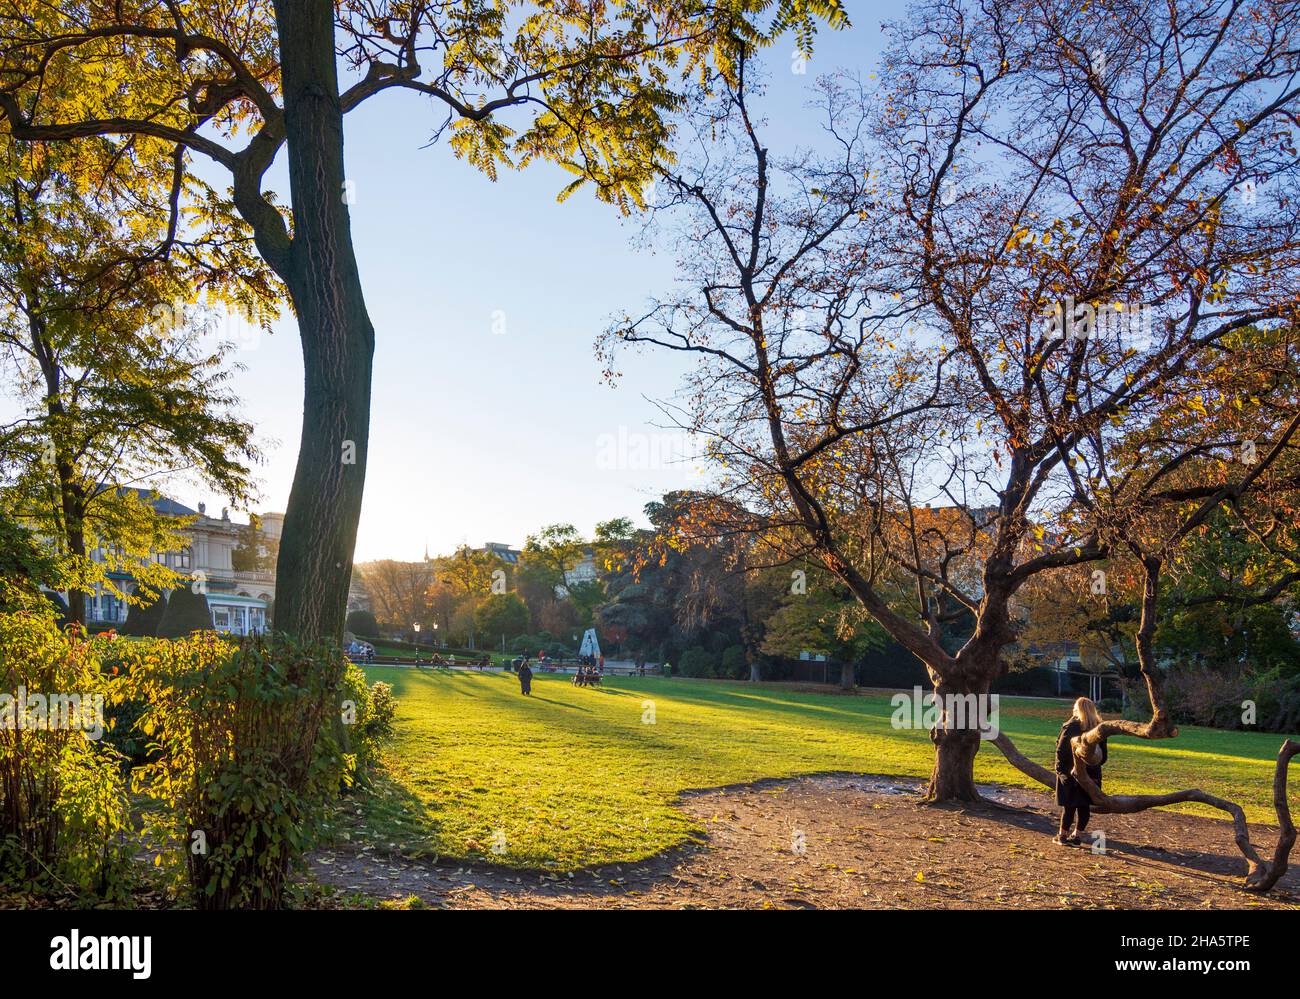 vienne, parc stadtpark, femme à l'arbre bénéficie du dernier soleil du jour, couleurs d'automne, vue à kursalon hübner en 01. vieille ville, vienne, autriche Banque D'Images